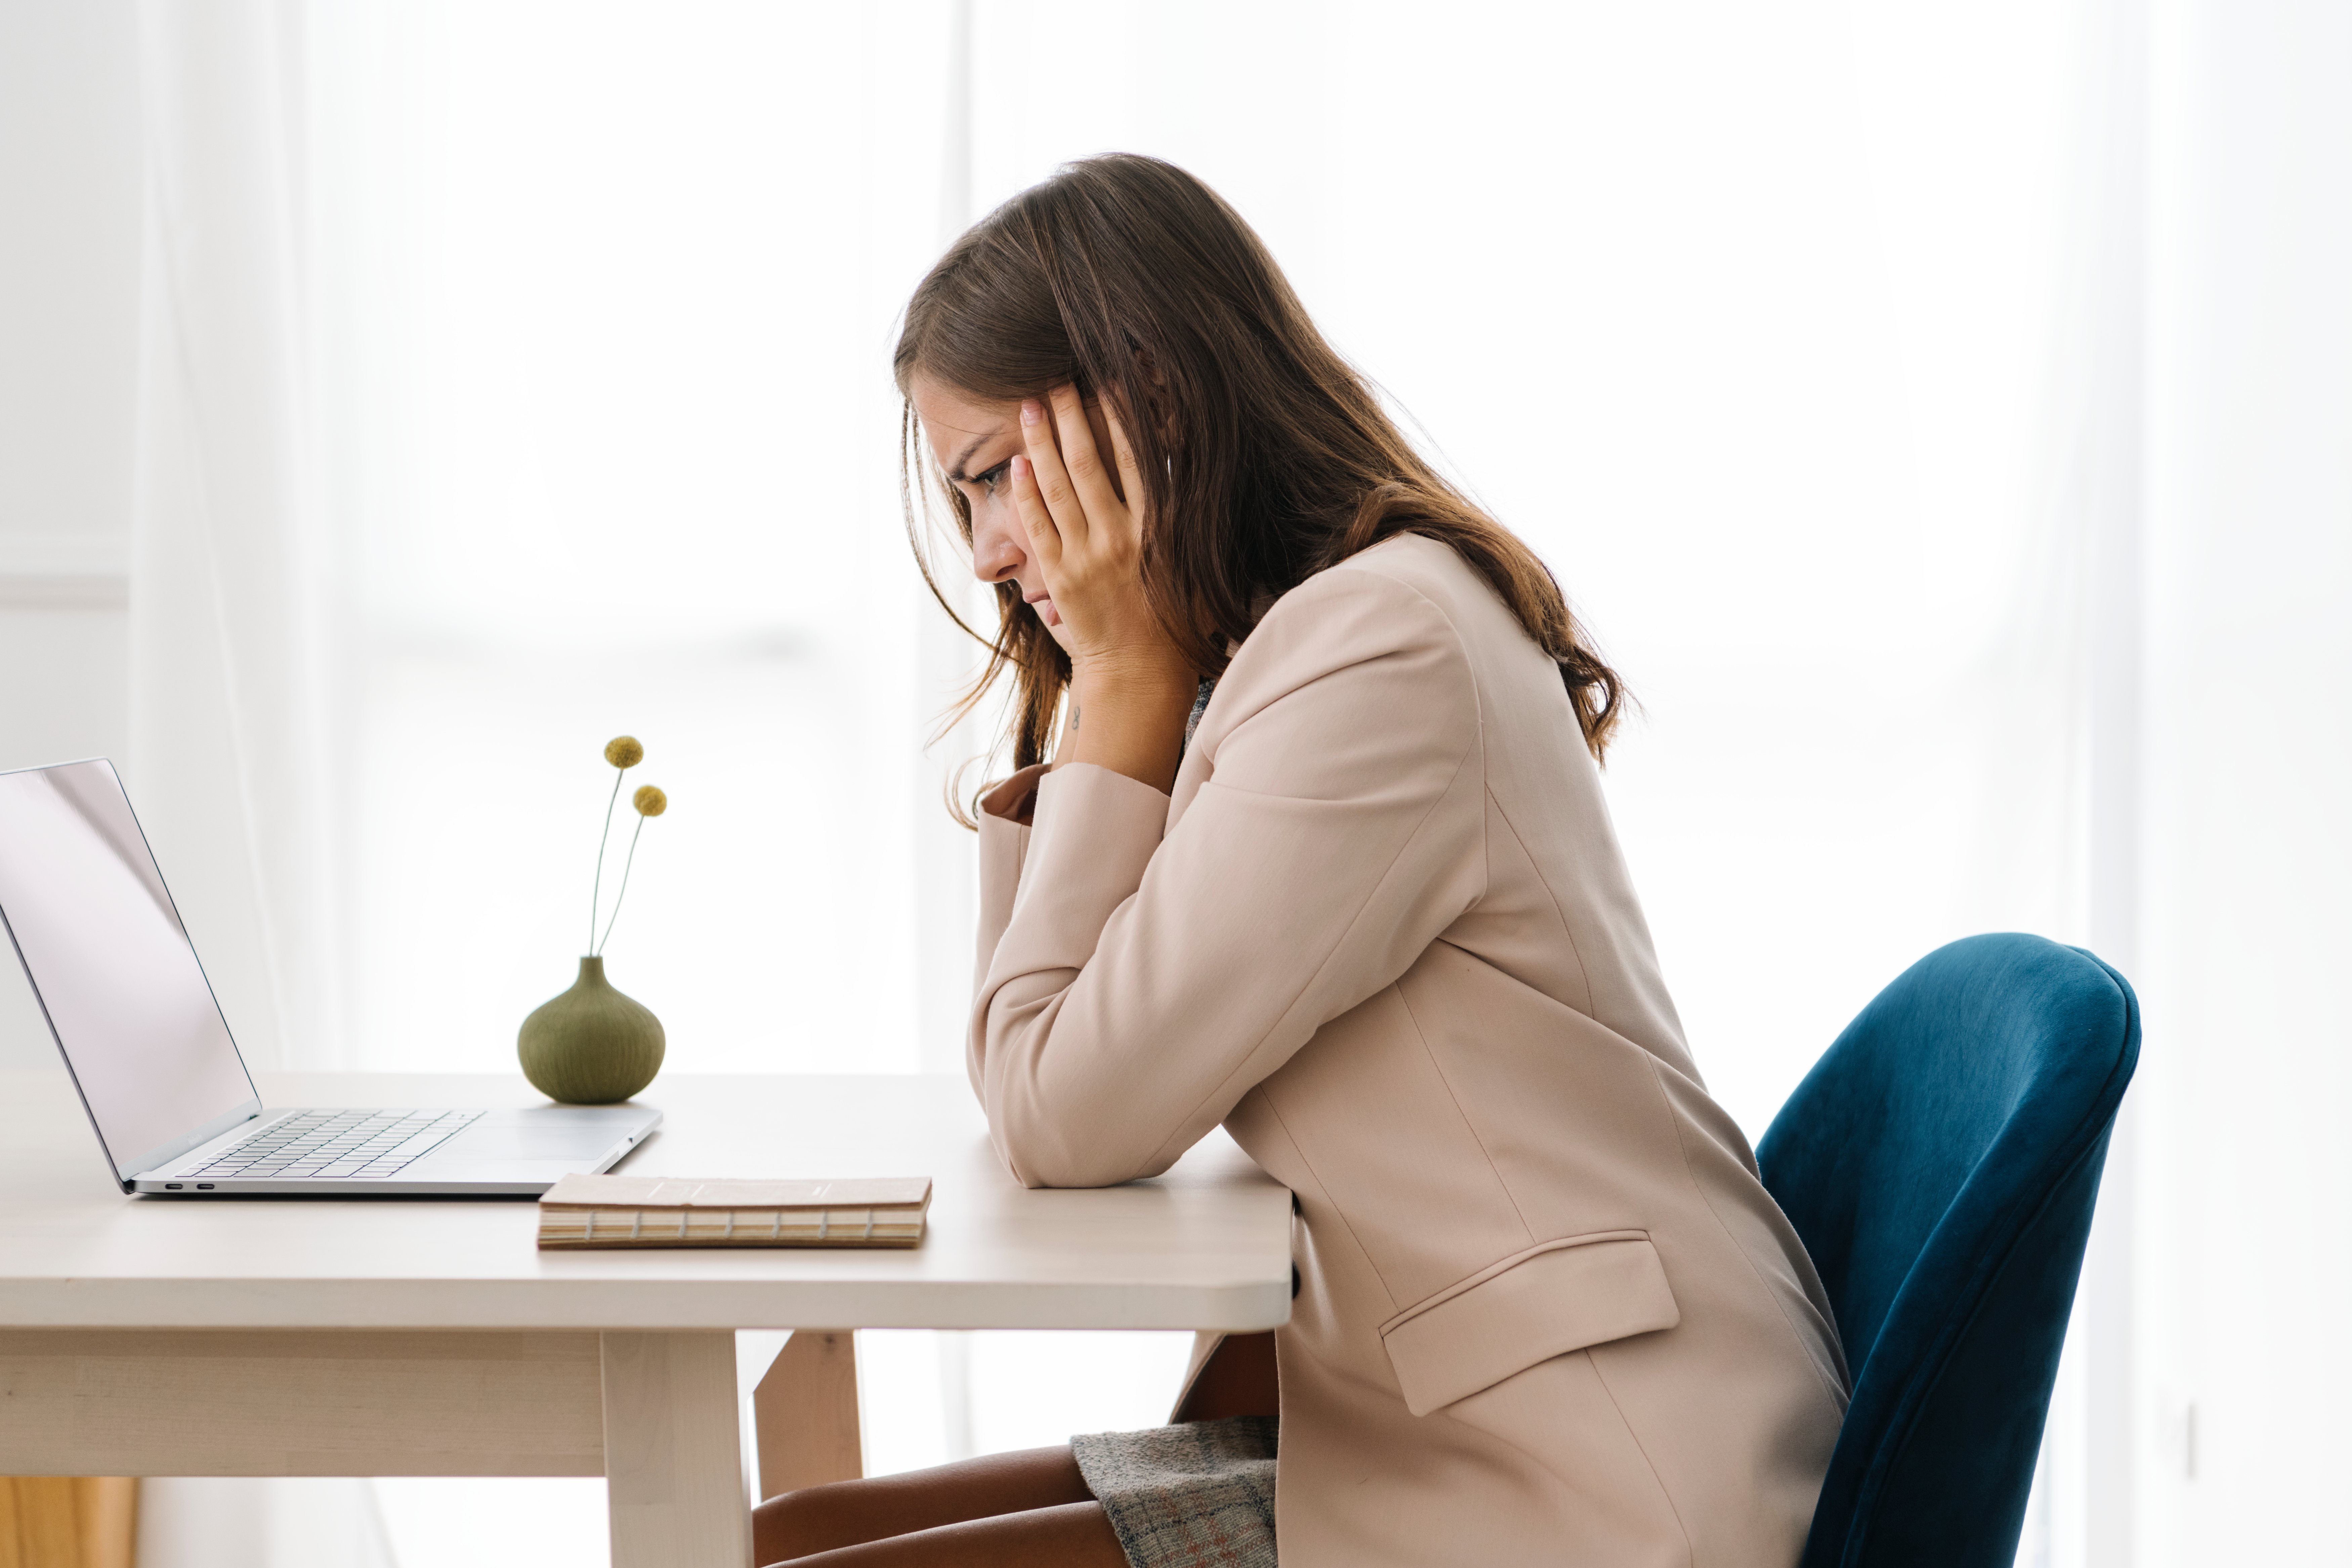 3 de cada 10 profesionales reclaman más atención sobre la salud mental para prevenir el desgaste laboral